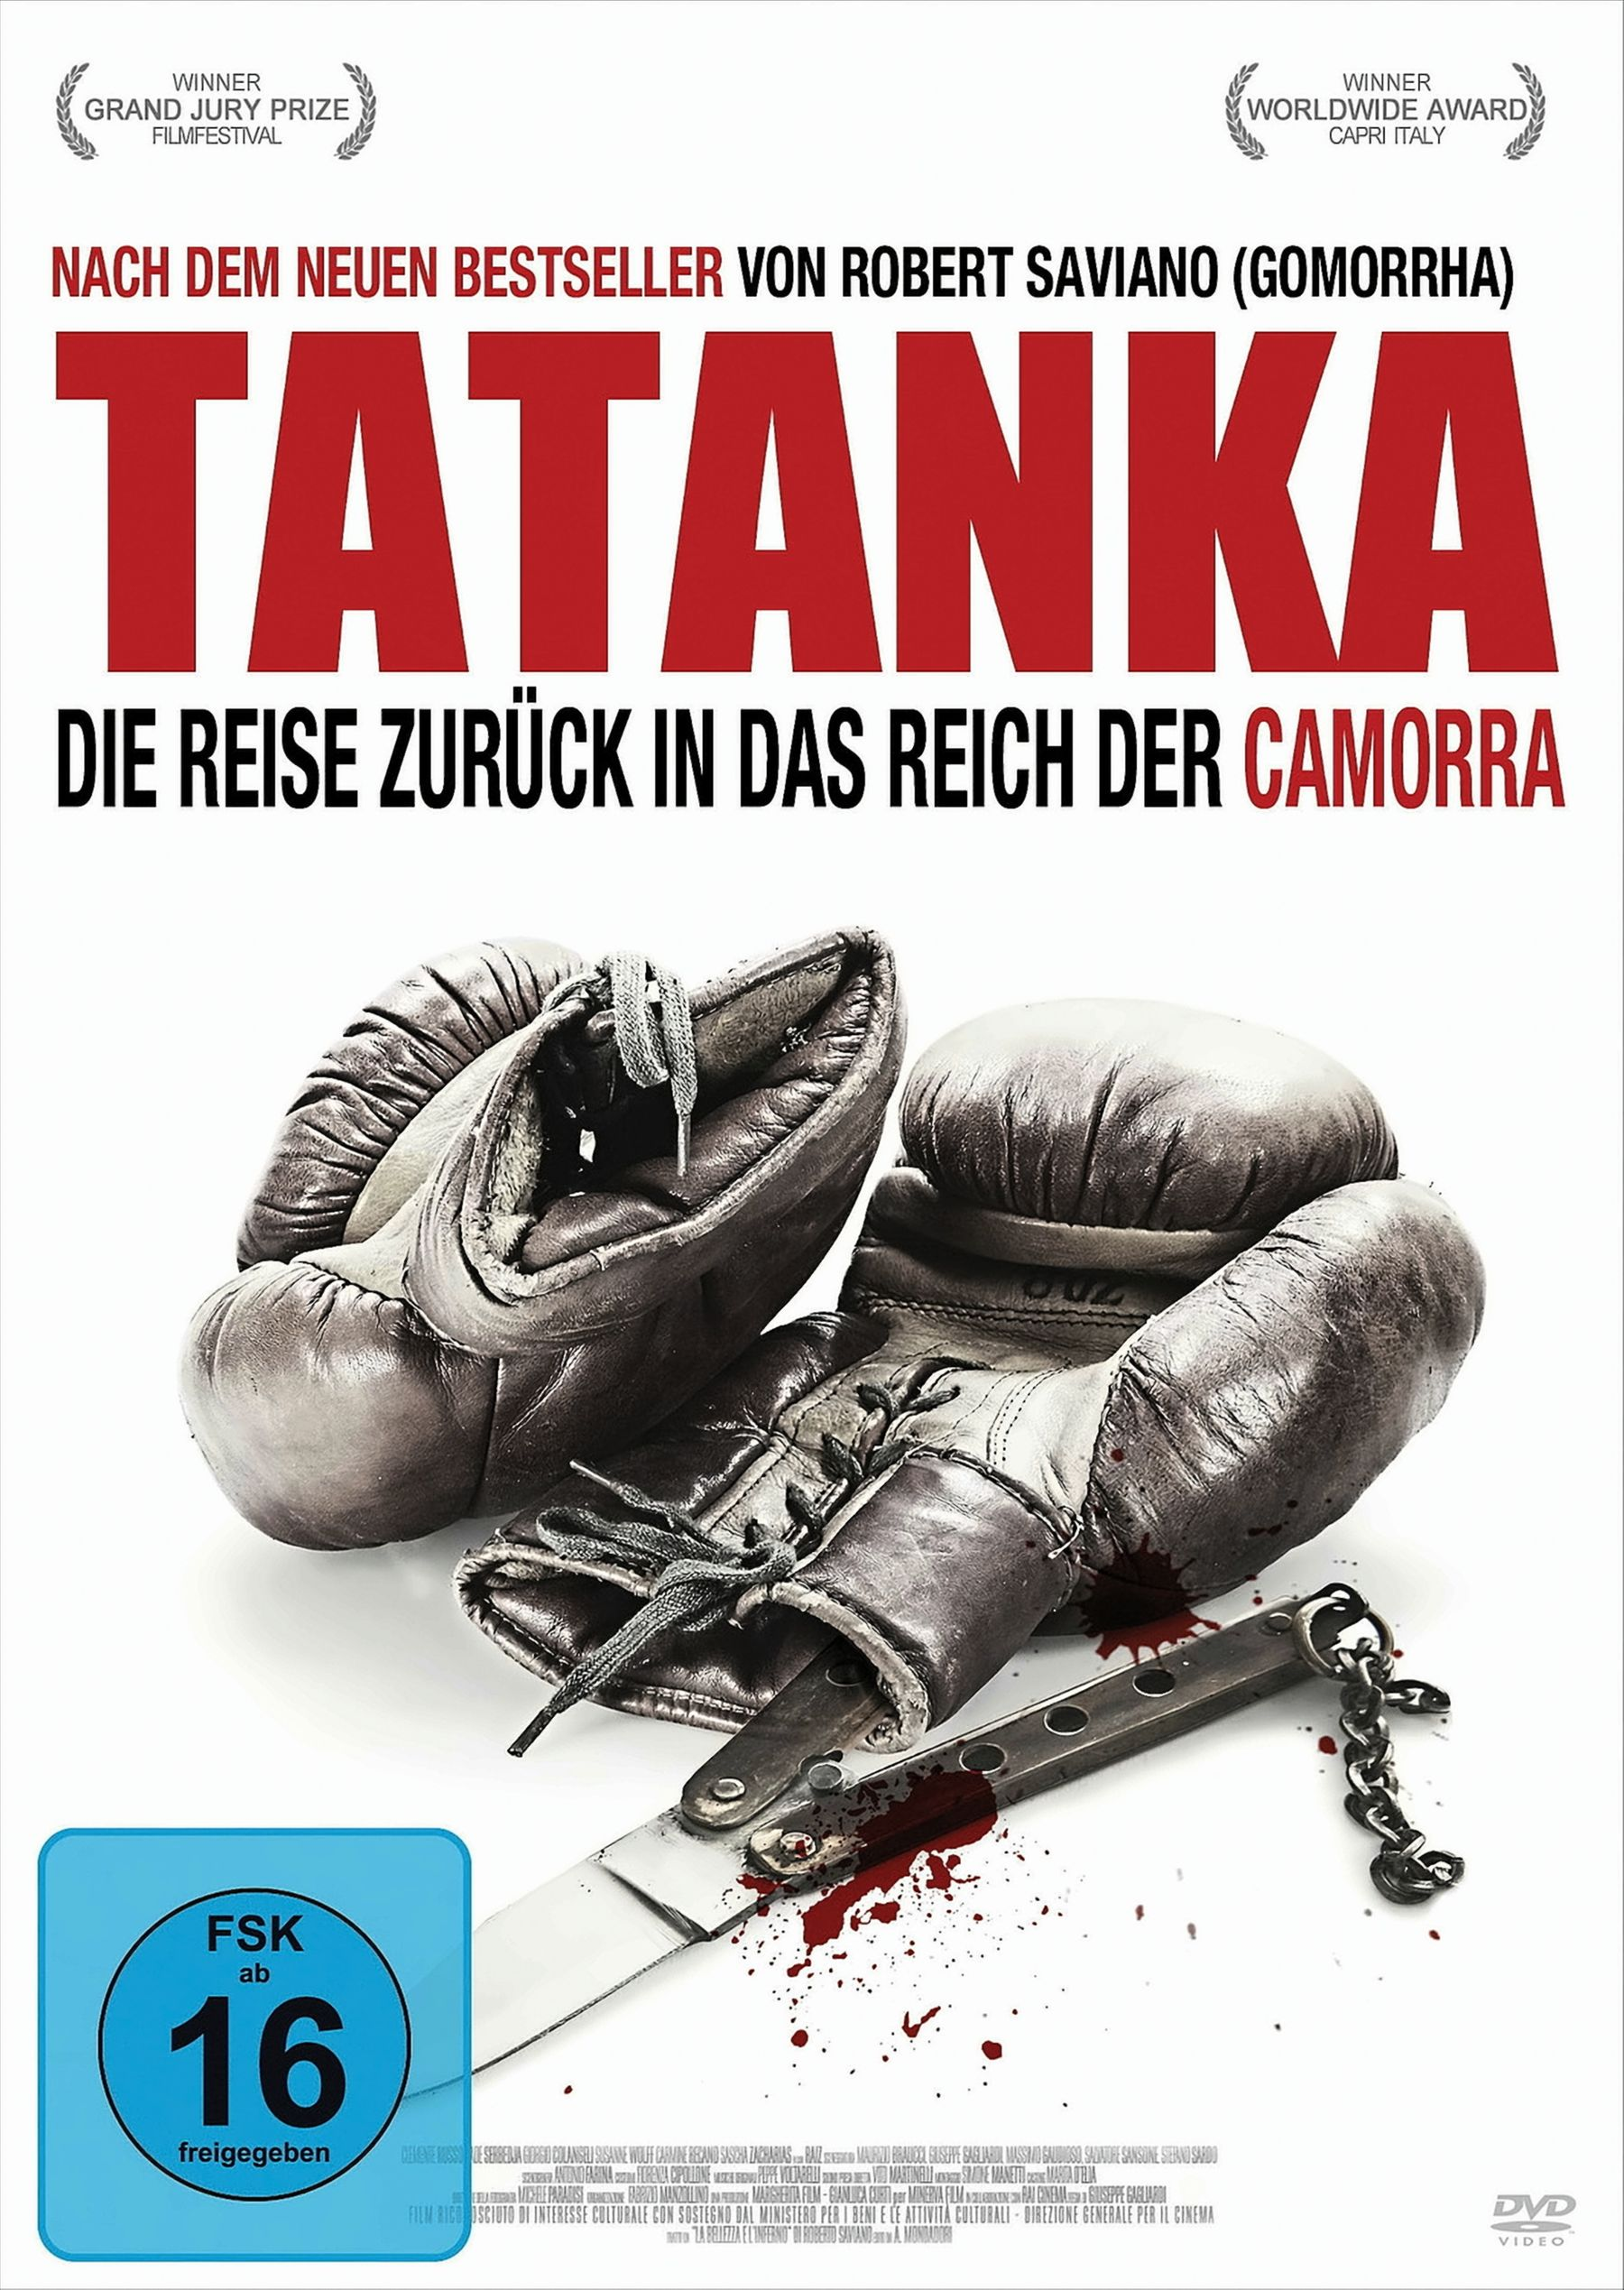 Tatanka - Die Reise zurück Camorra Reich das der DVD in